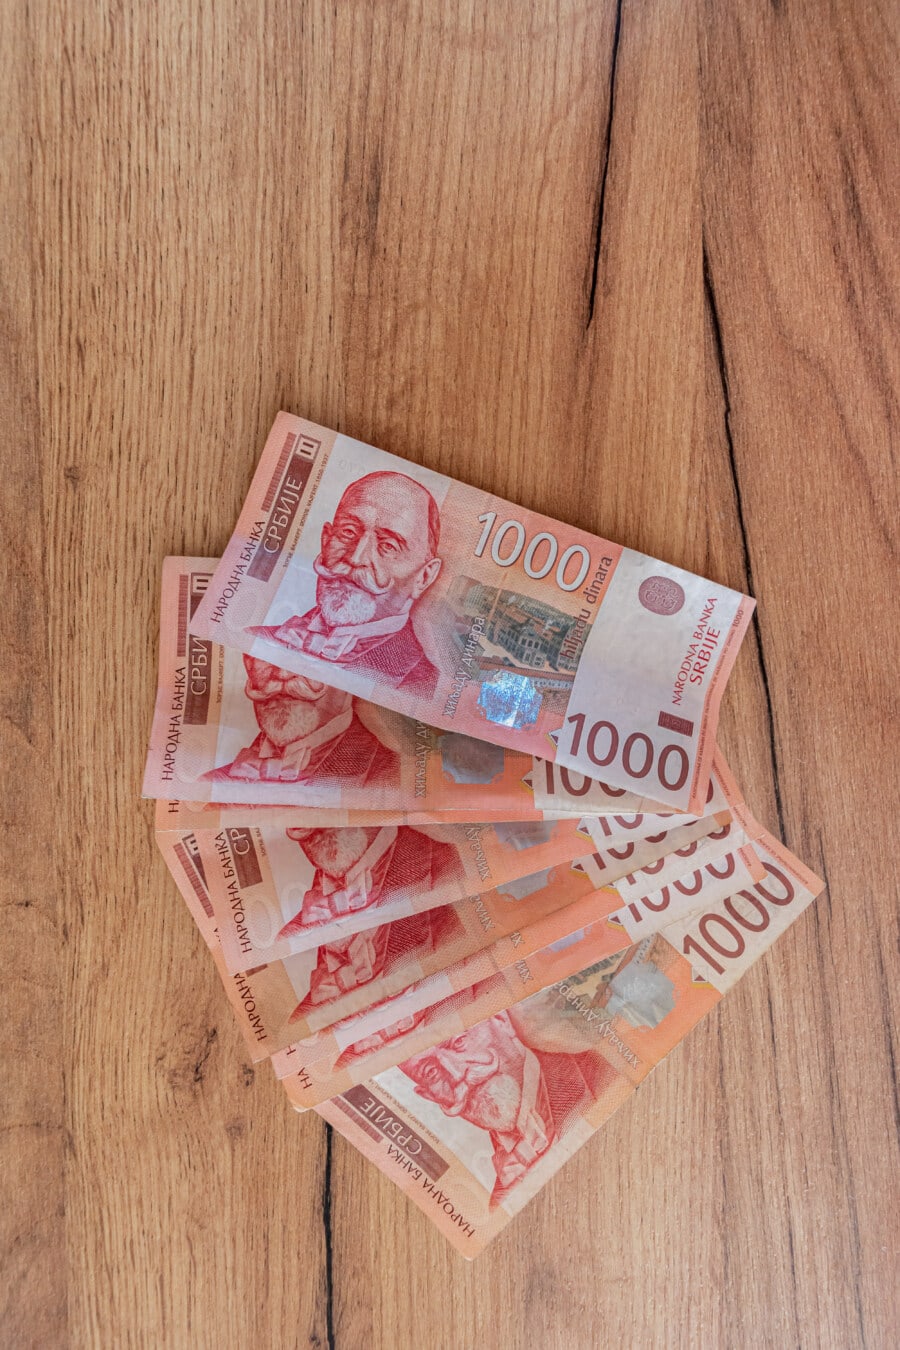 srbský dinár, papierové peniaze, bankovka, Srbsko, peniaze, hotovosť, papier, meny, financie, úspory